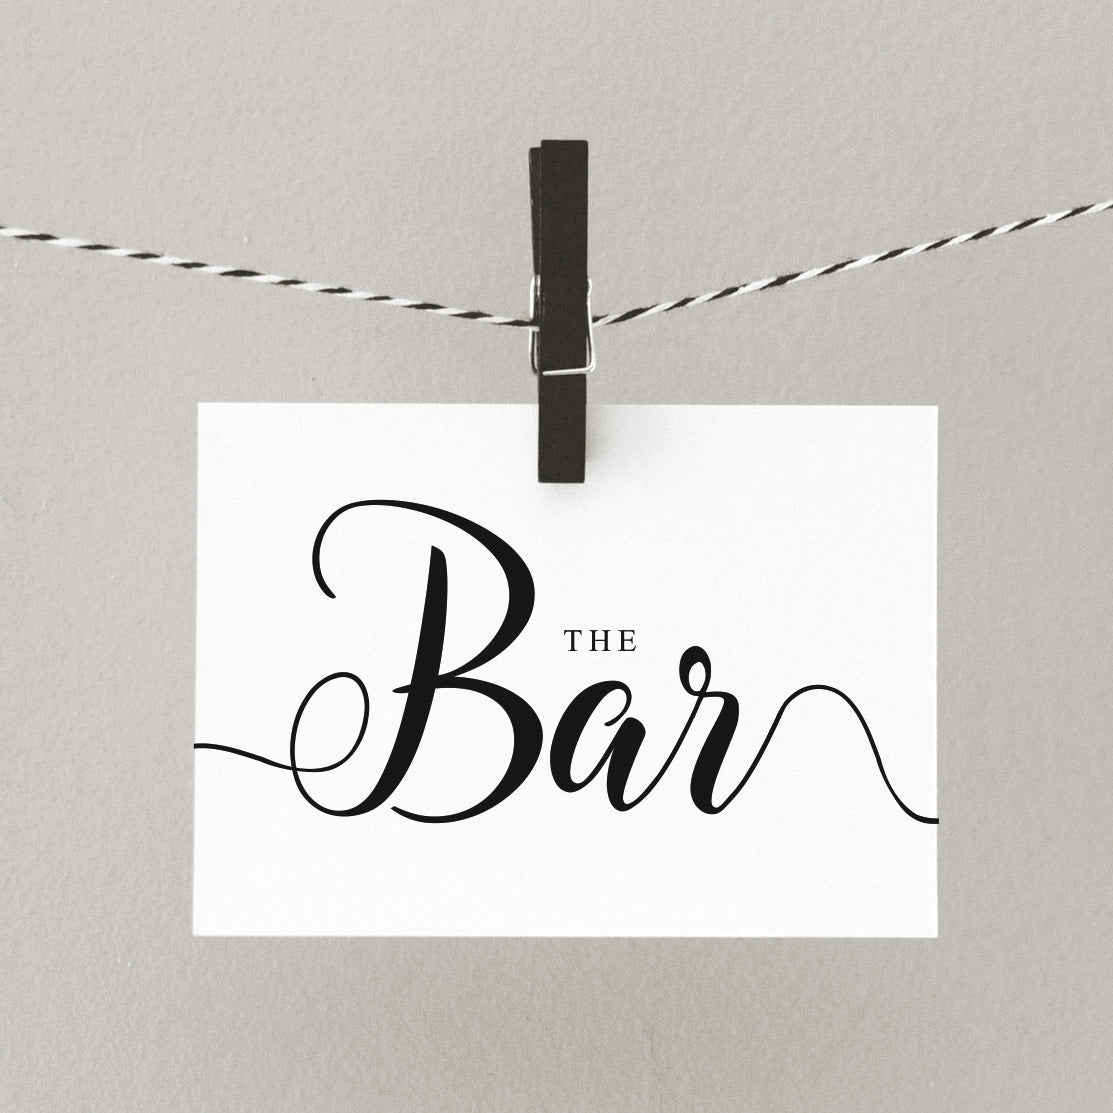 The bar elegant wedding signage digital download